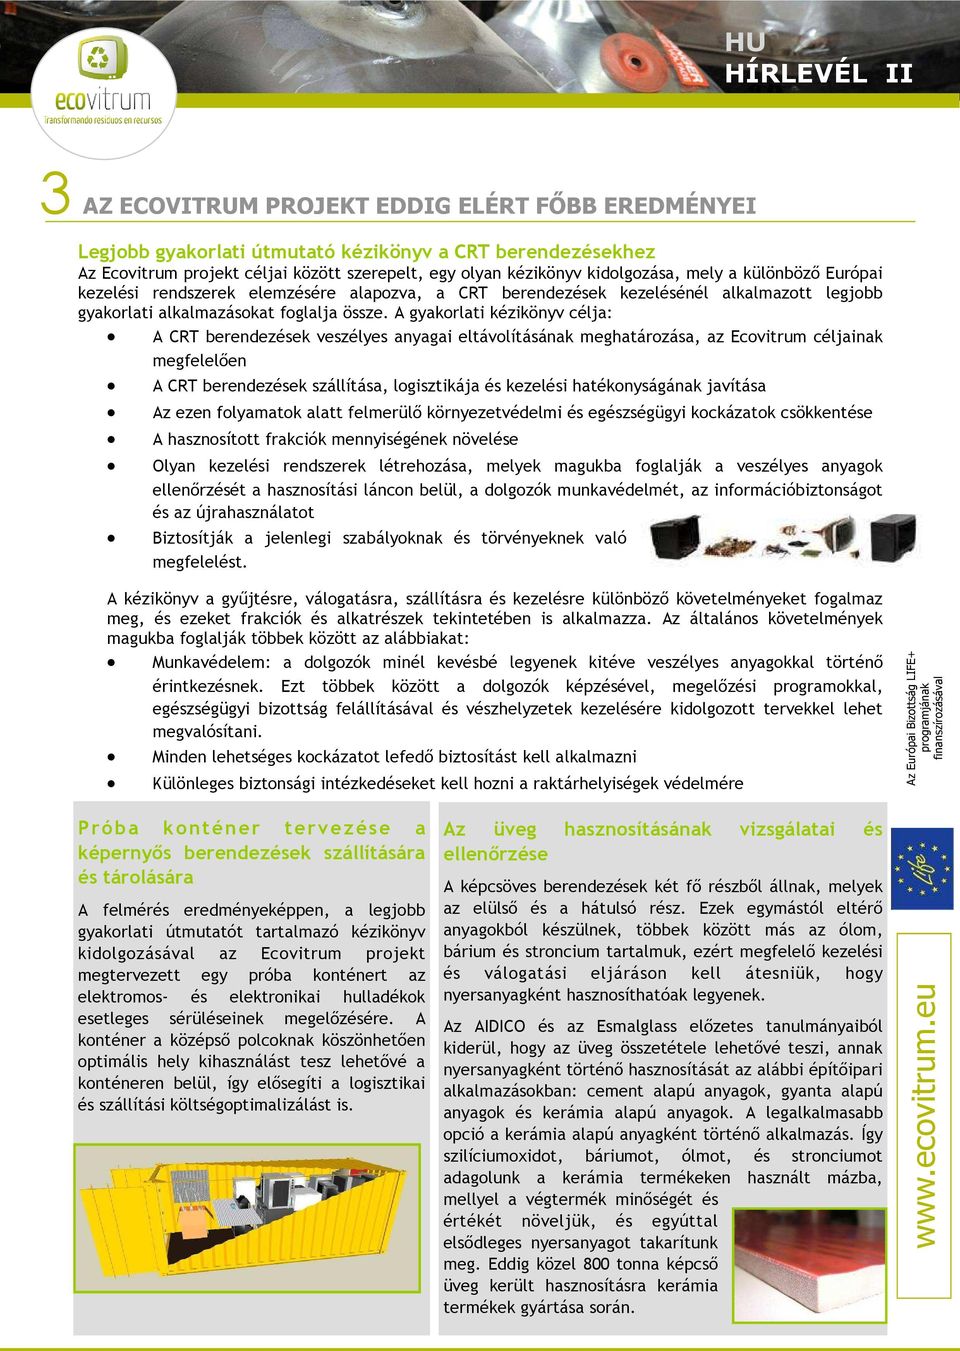 A gyakorlati kézikönyv célja: A CRT berendezések veszélyes anyagai eltávolításának meghatározása, az Ecovitrum céljainak megfelelıen A CRT berendezések szállítása, logisztikája és kezelési